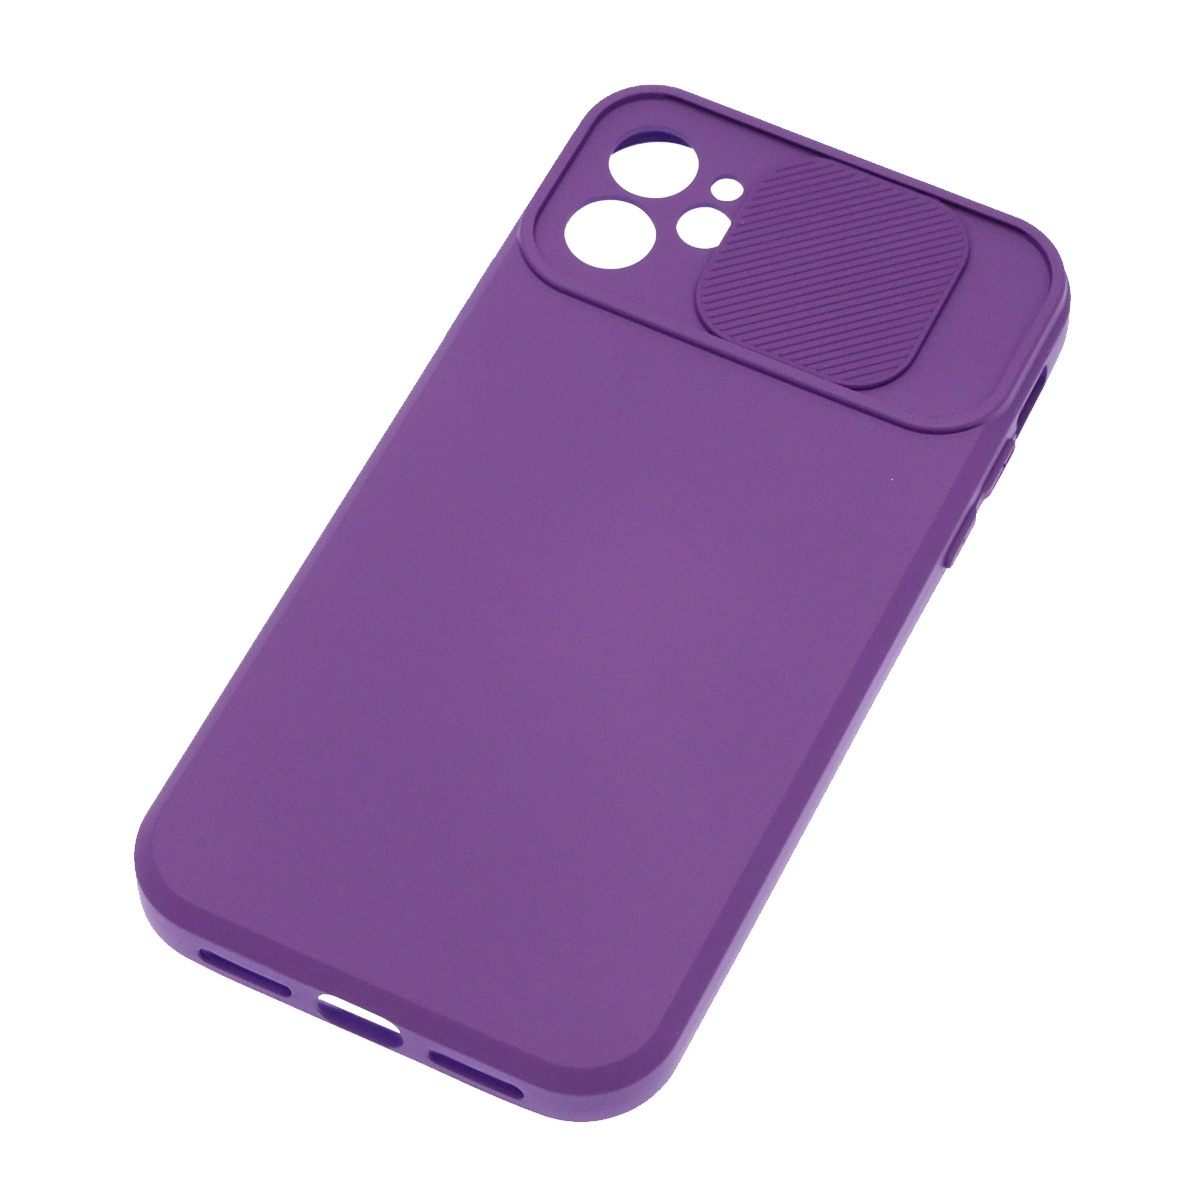 Чехол накладка для APPLE iPhone 11, силикон, бархат, со шторкой для защиты задней камеры, цвет фиолетовый